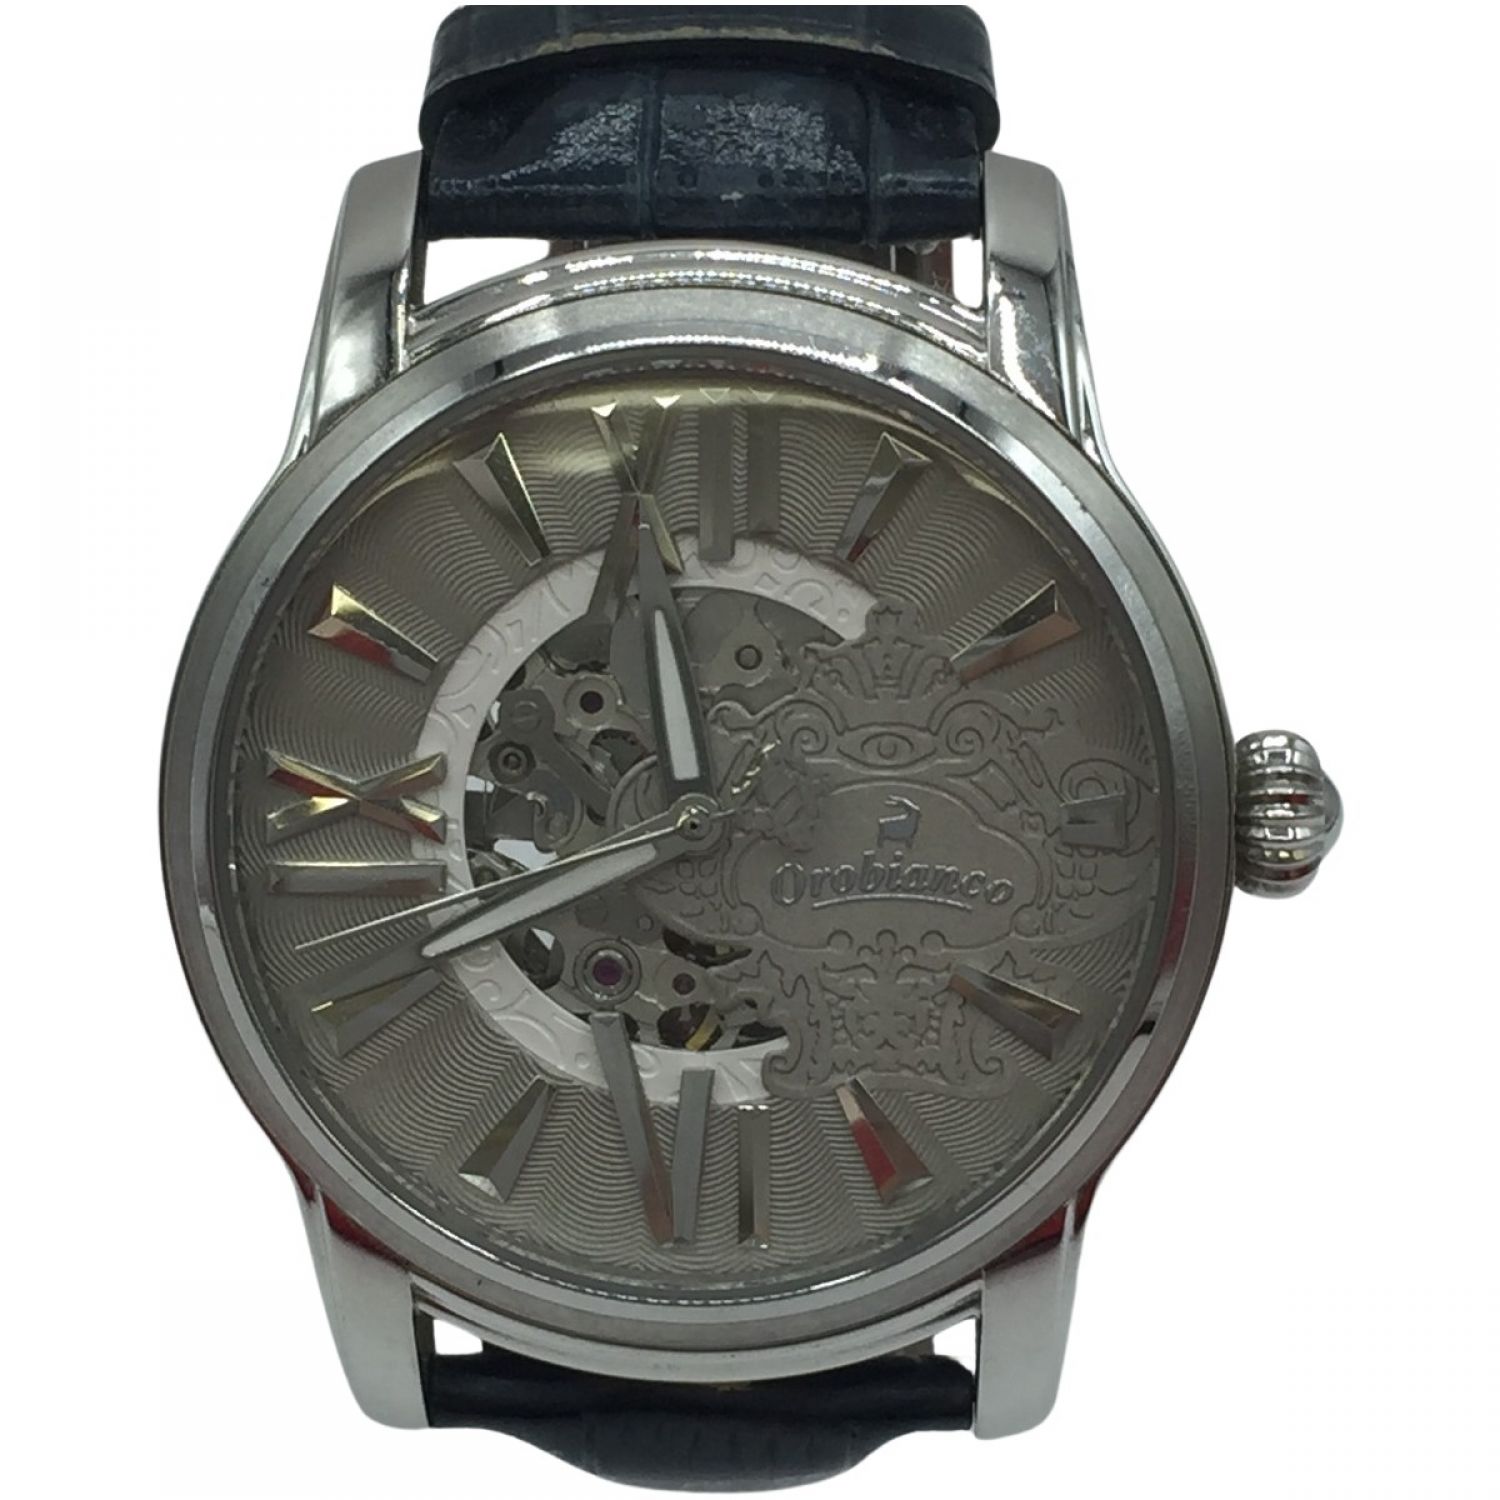 その他オロビアンコ 腕時計 - OR-0011 メンズ 黒